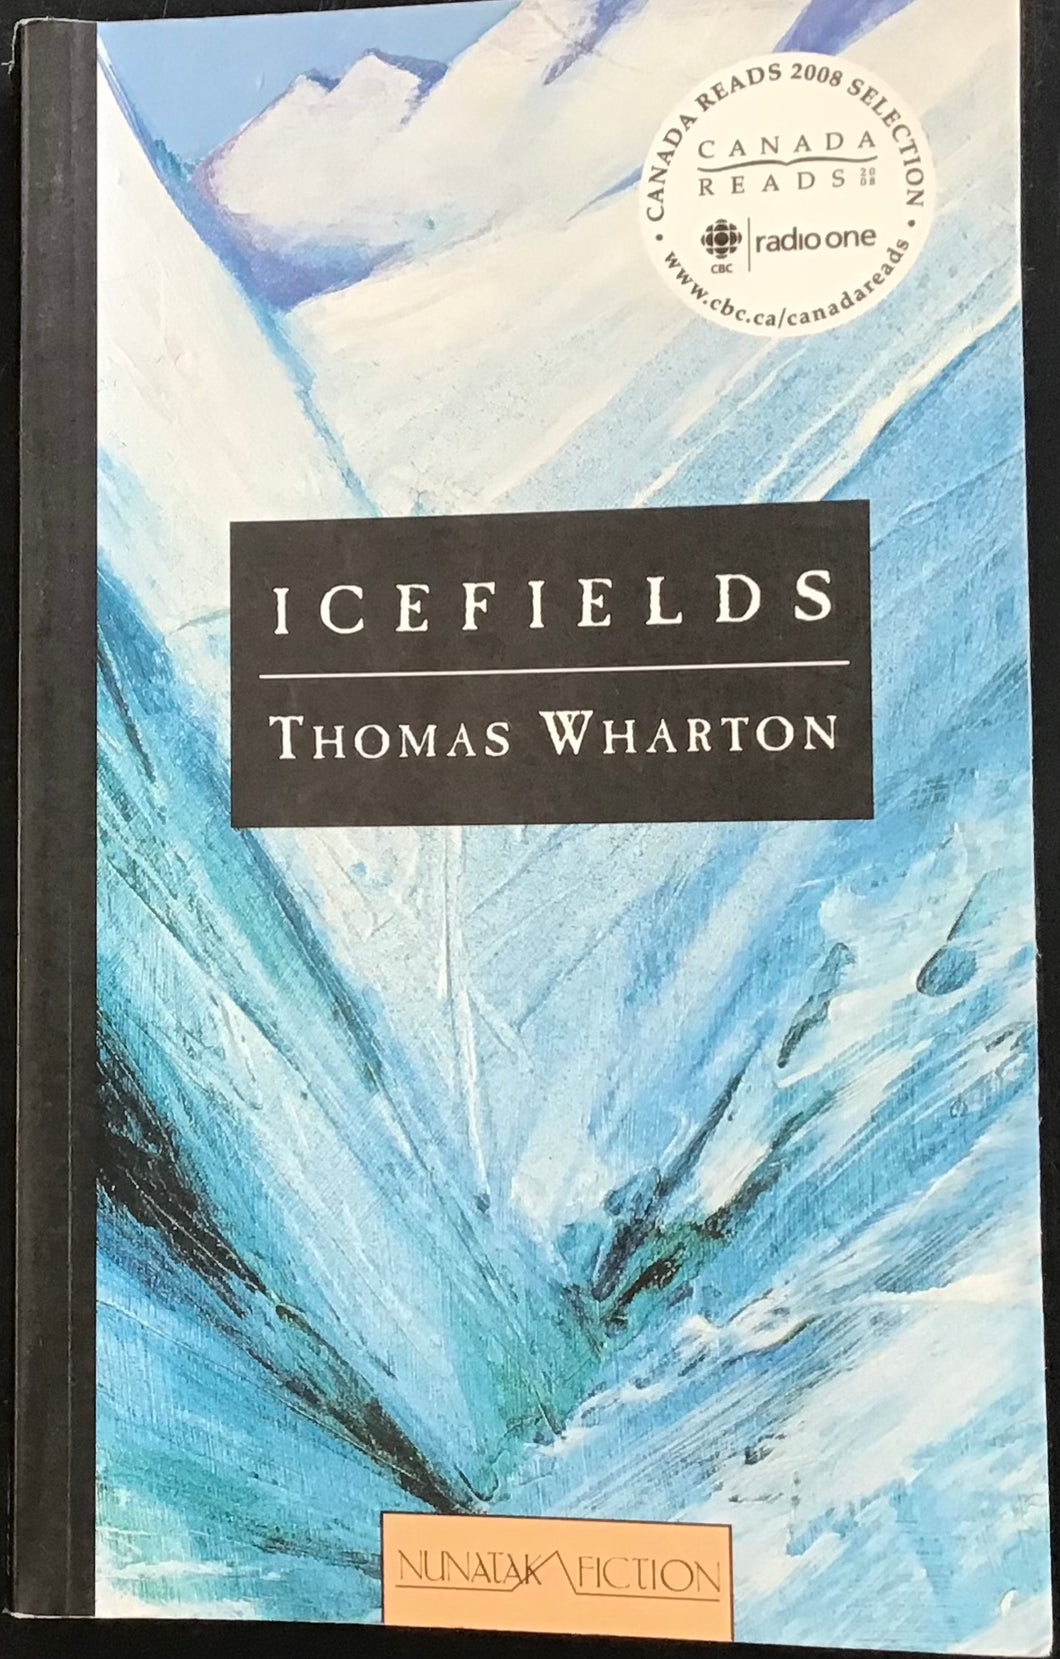 Icefields, Thomas Wharton